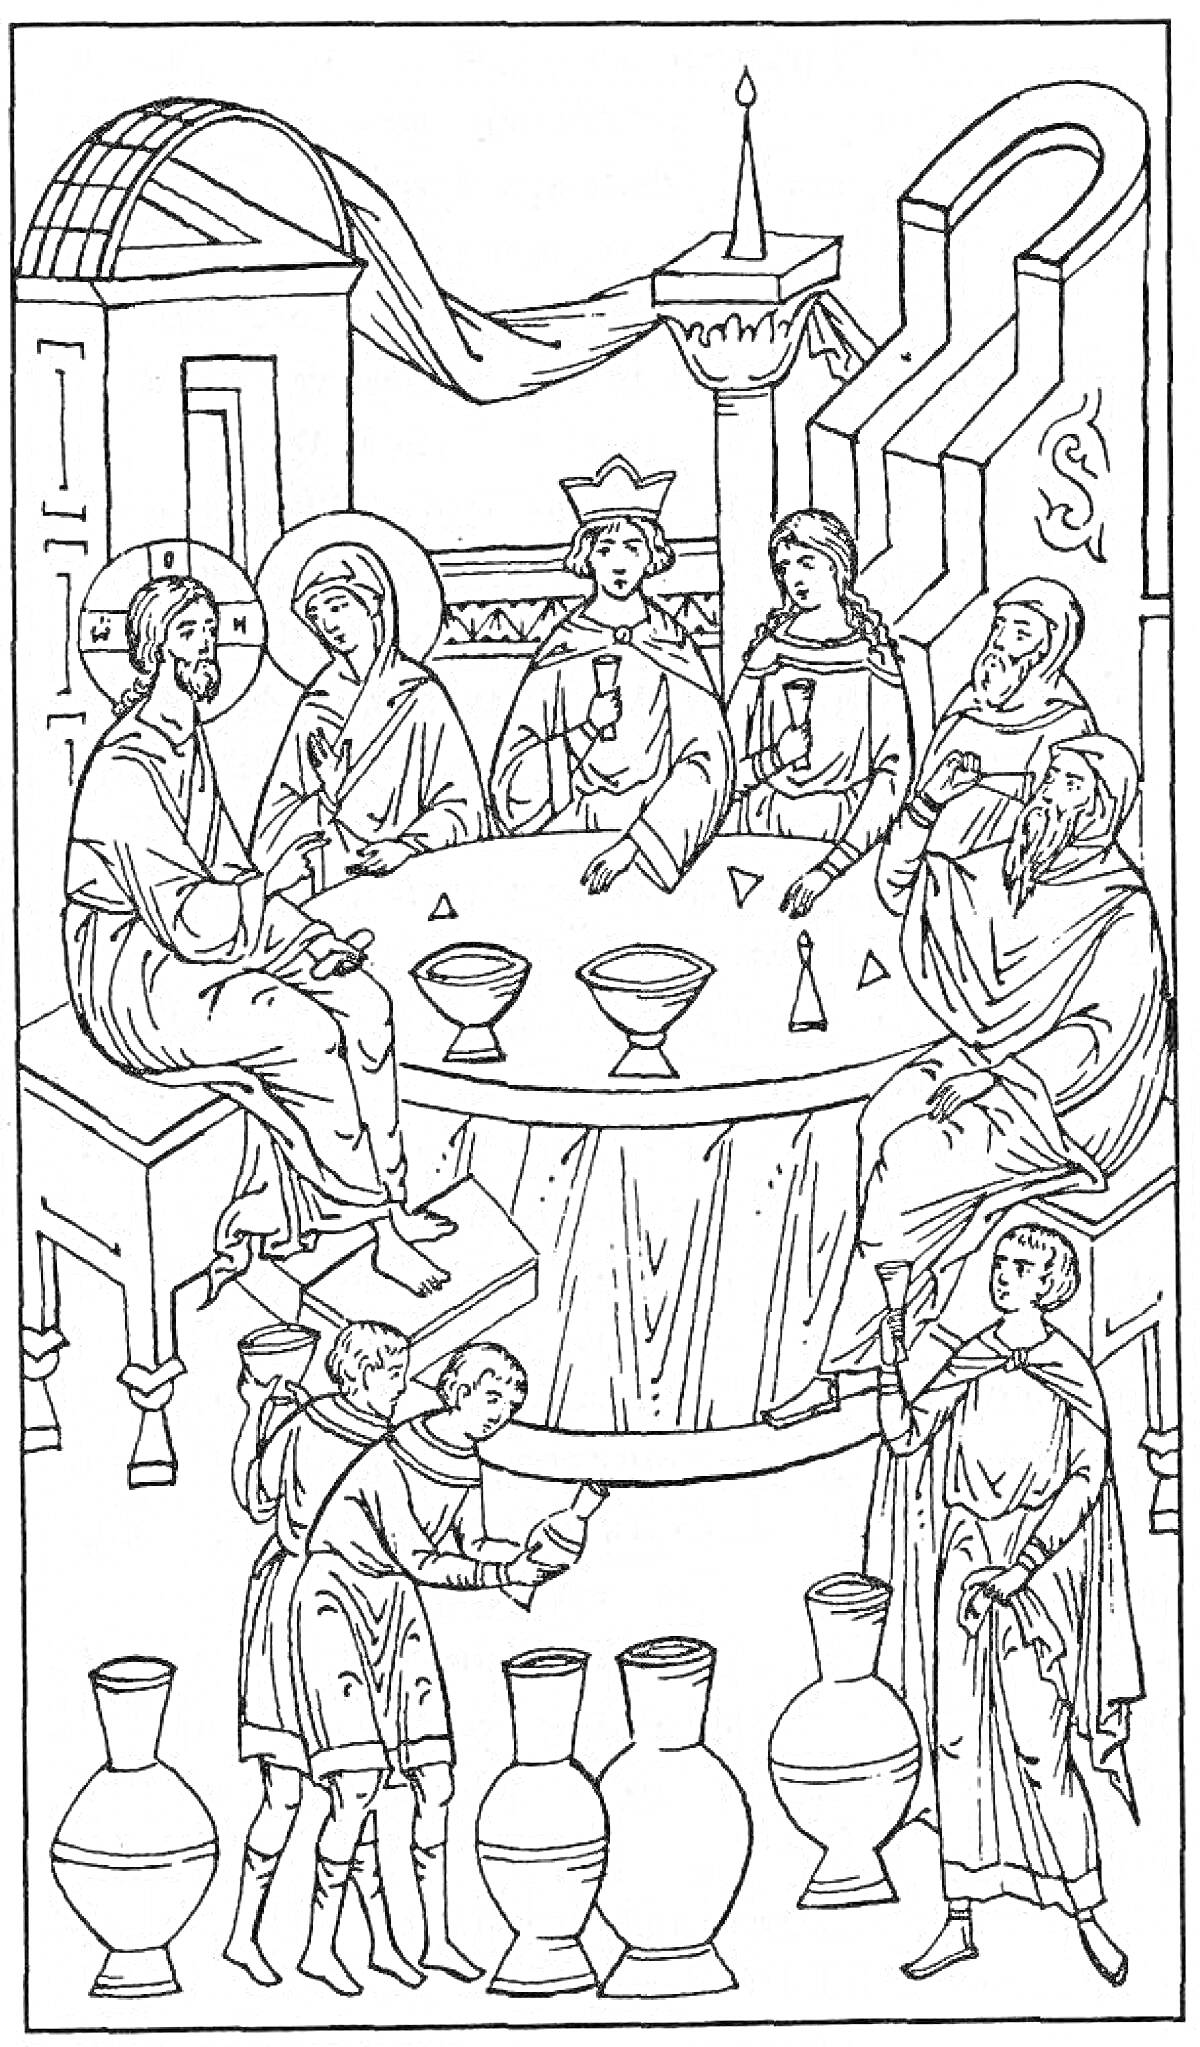 Раскраска Пир в теремных палатах с участием нескольких людей, сидящих вокруг круглого стола, три сосуда, несколько человек стоят